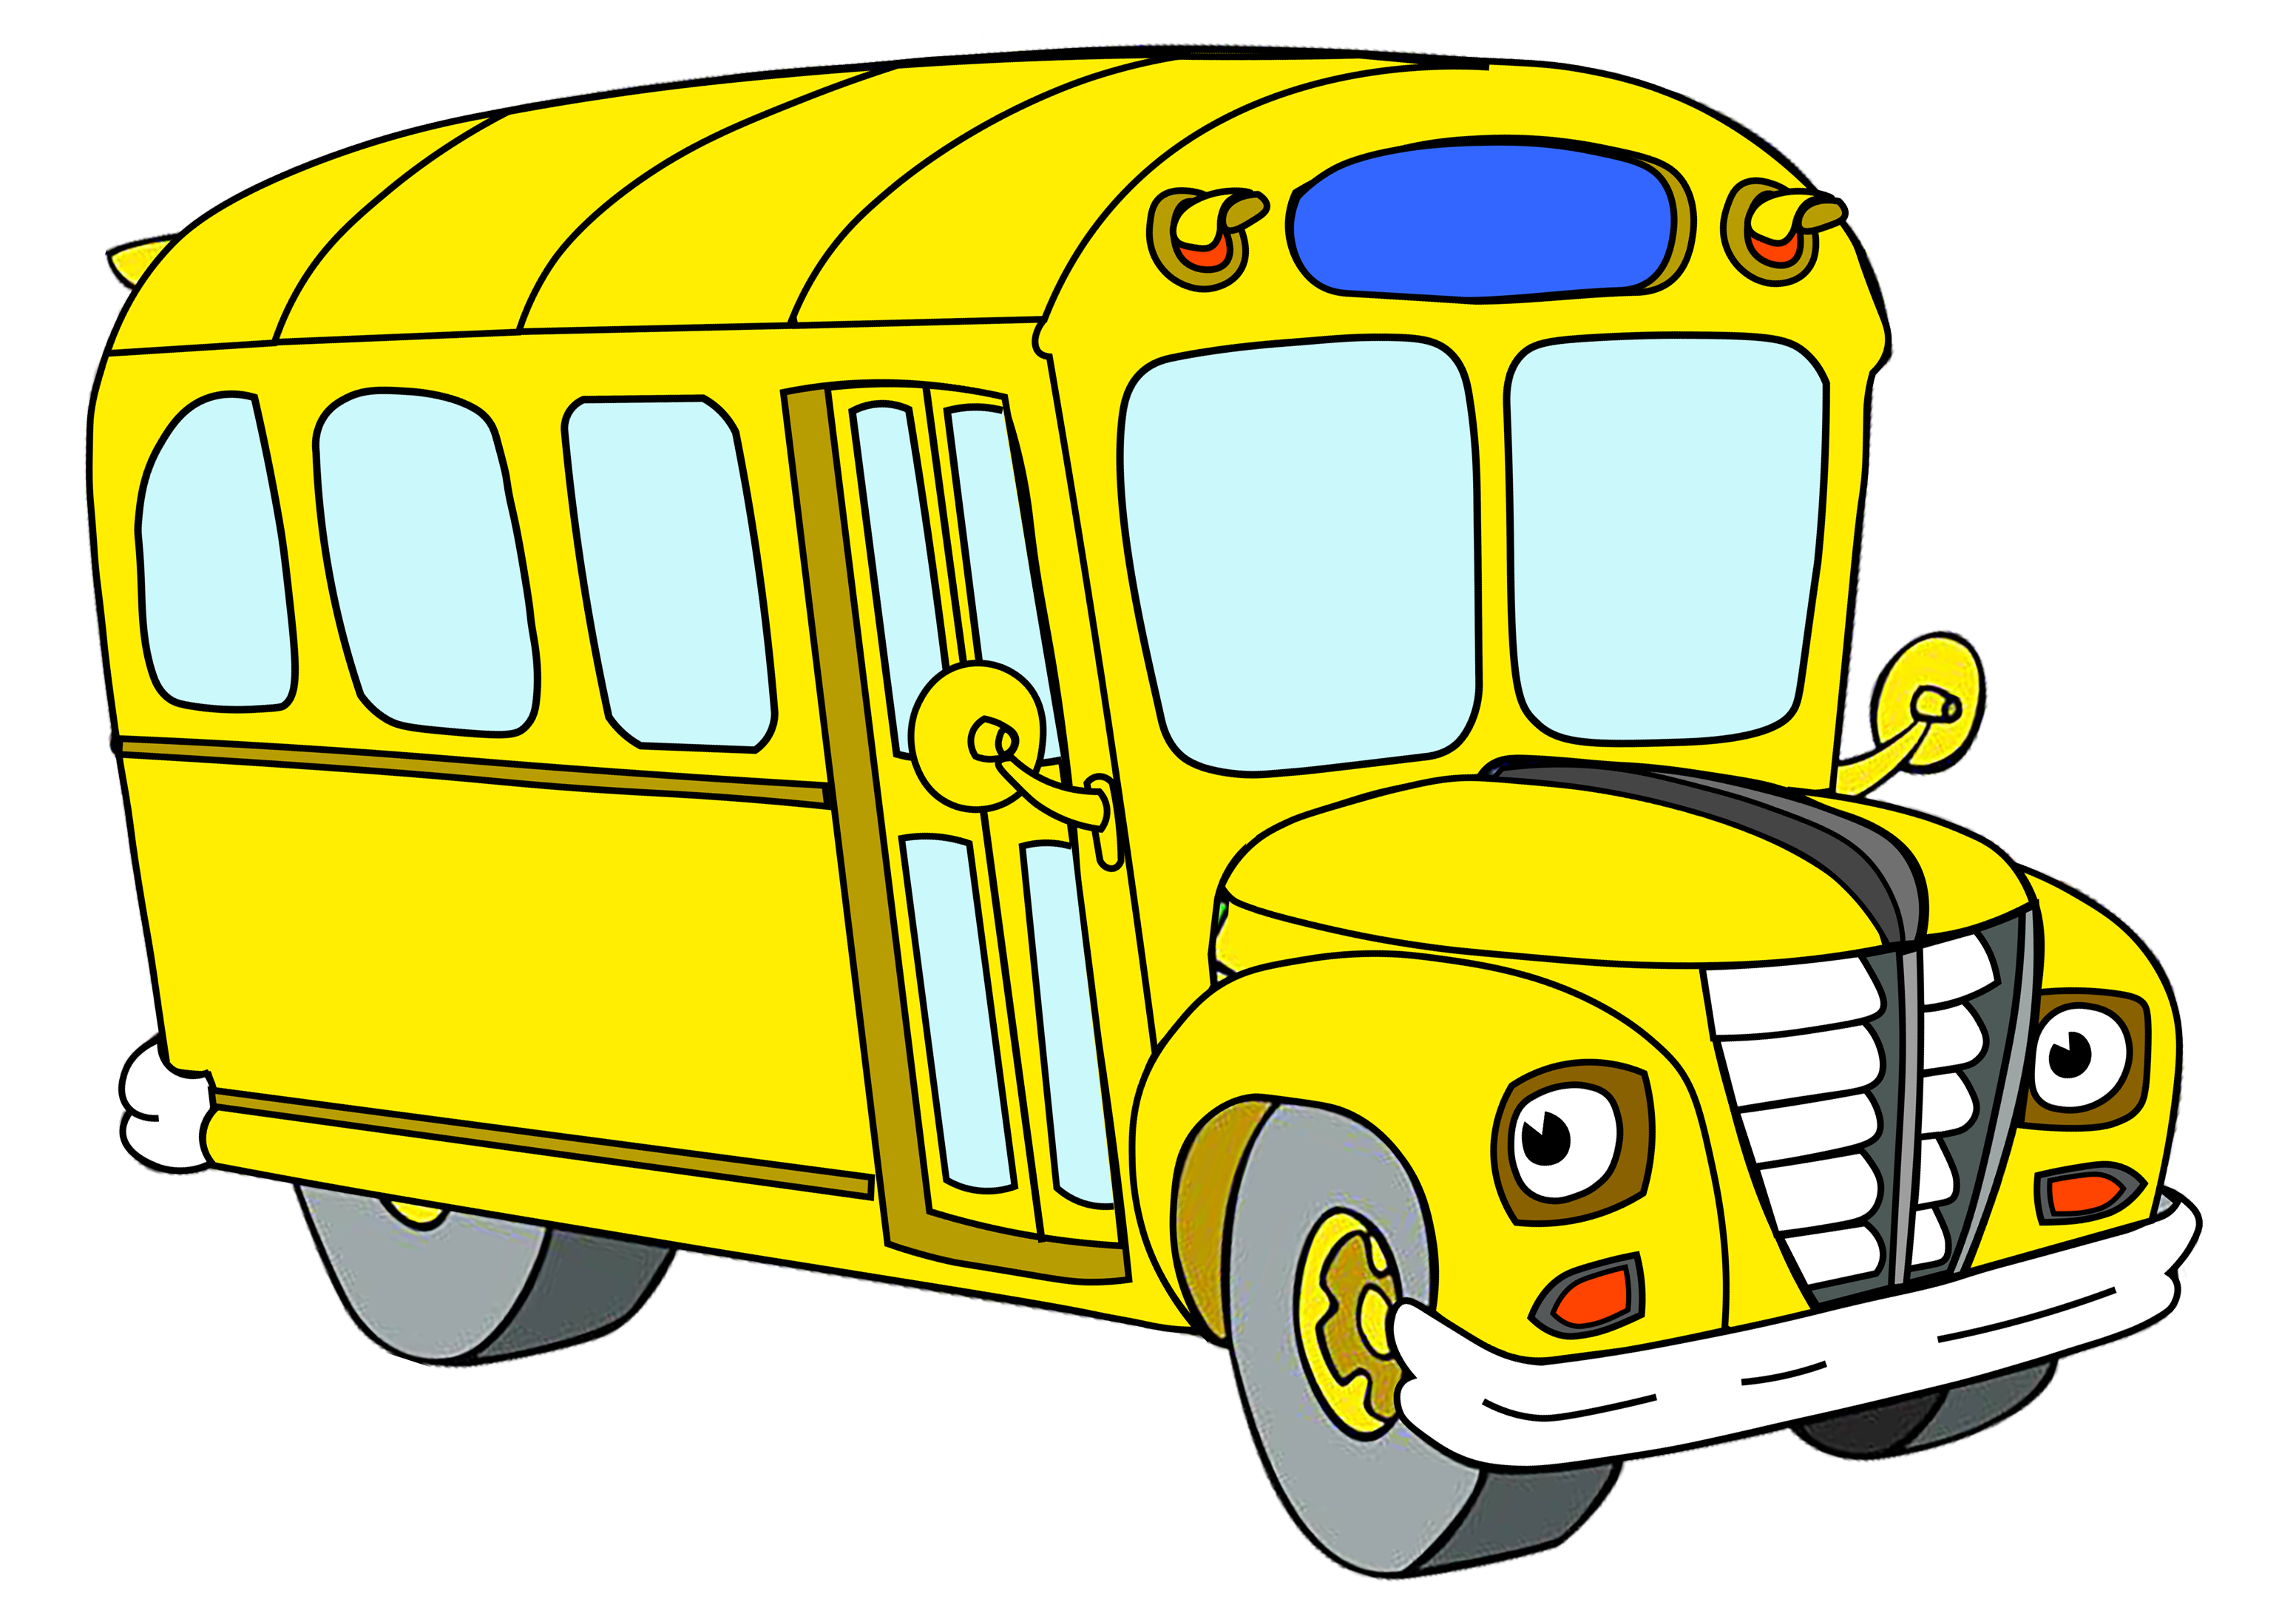 Magic school bus. The Magic School Bus. Школьный автобус. Волшебный автобус. Сказочный автобус.